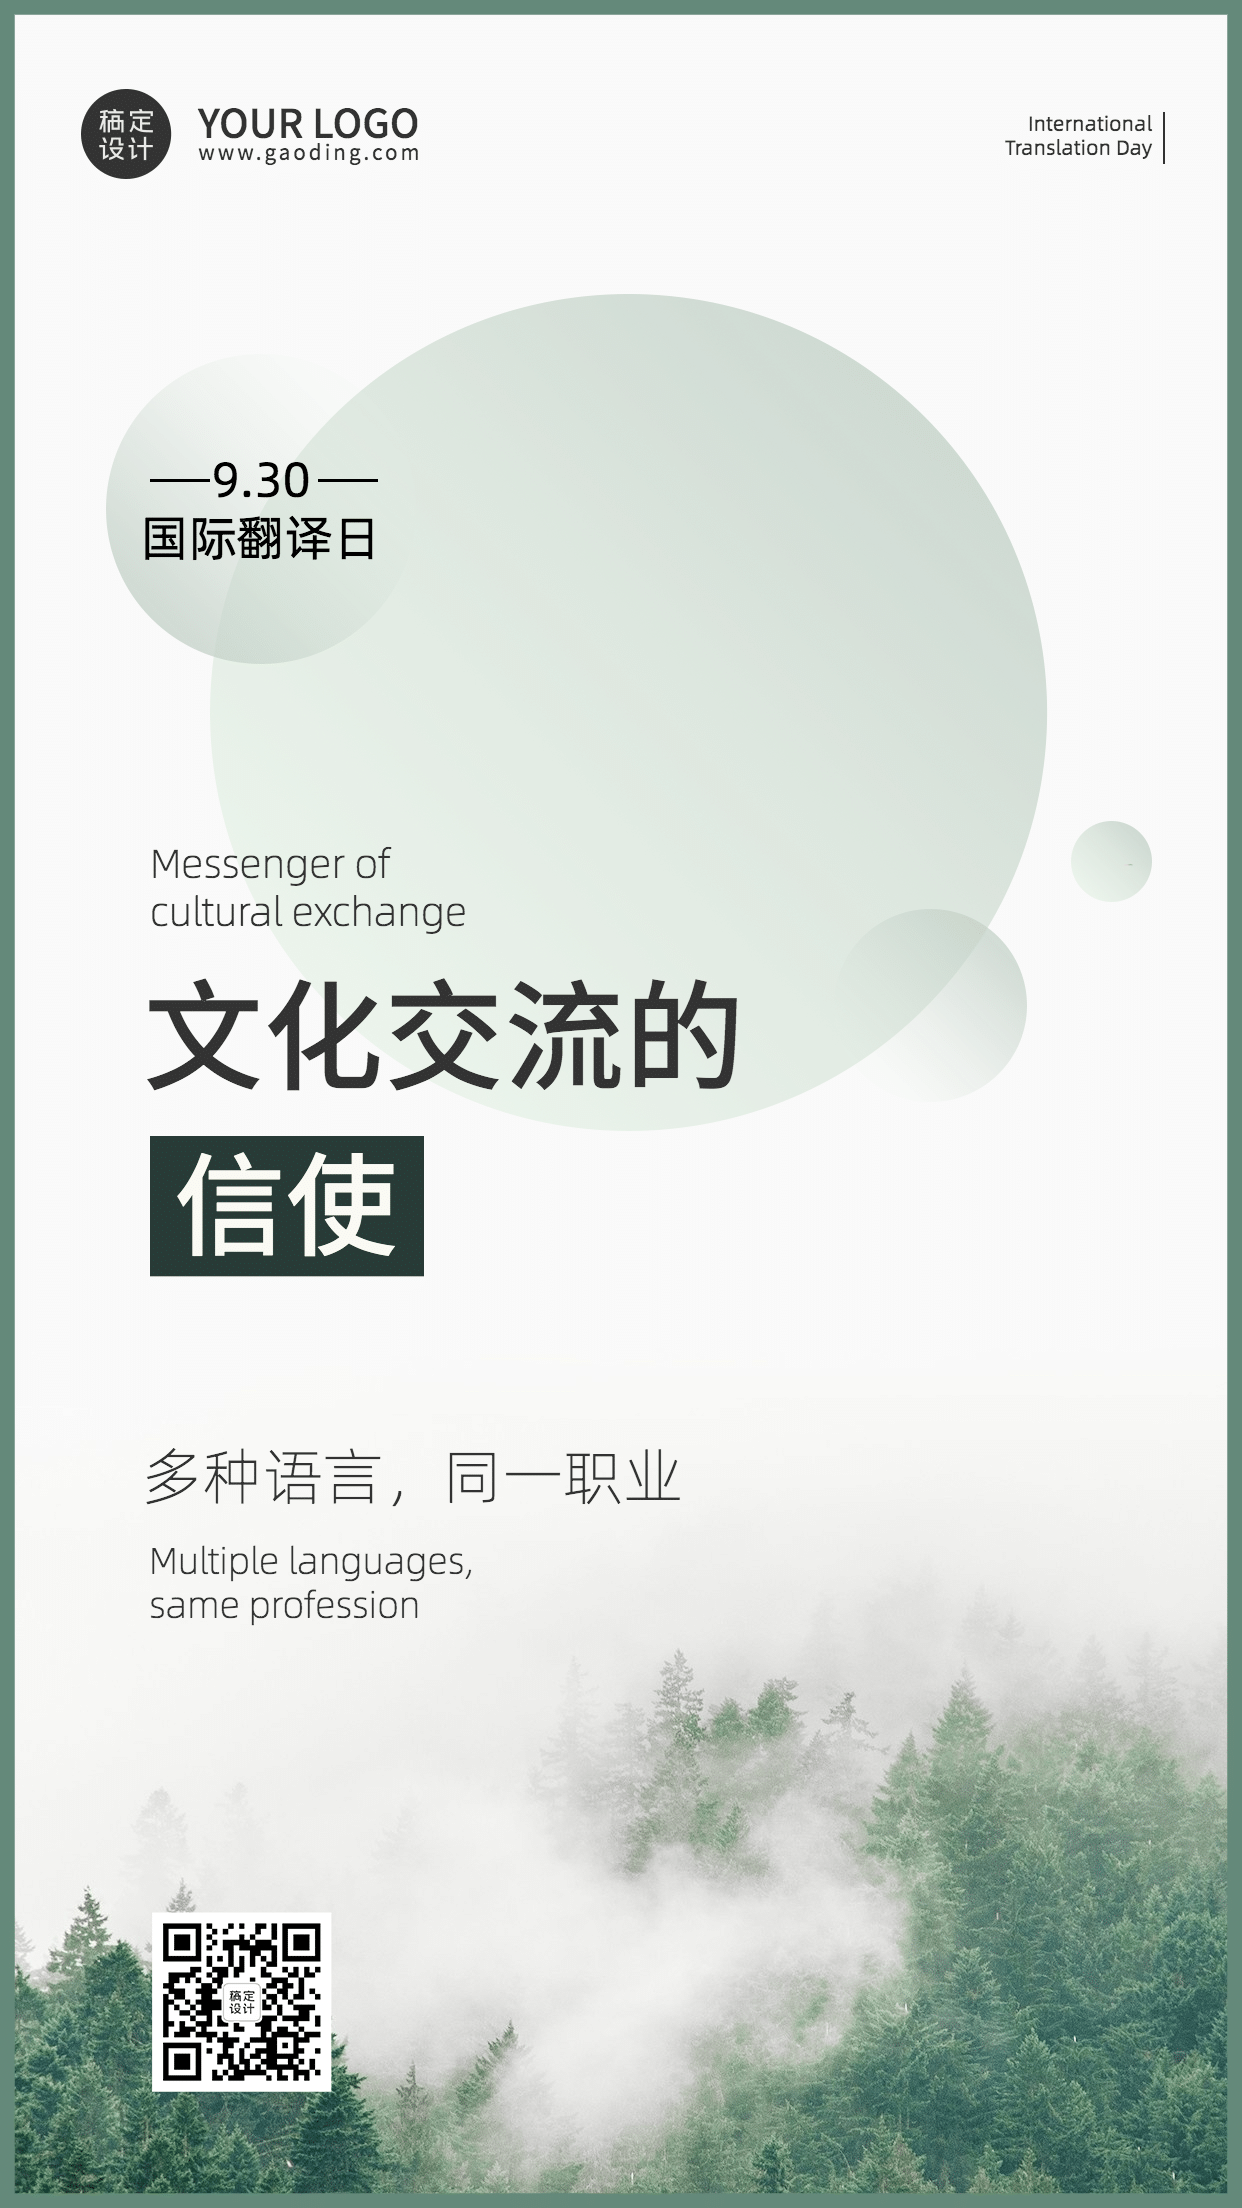 国际翻译日文化文学宣传实景海报预览效果